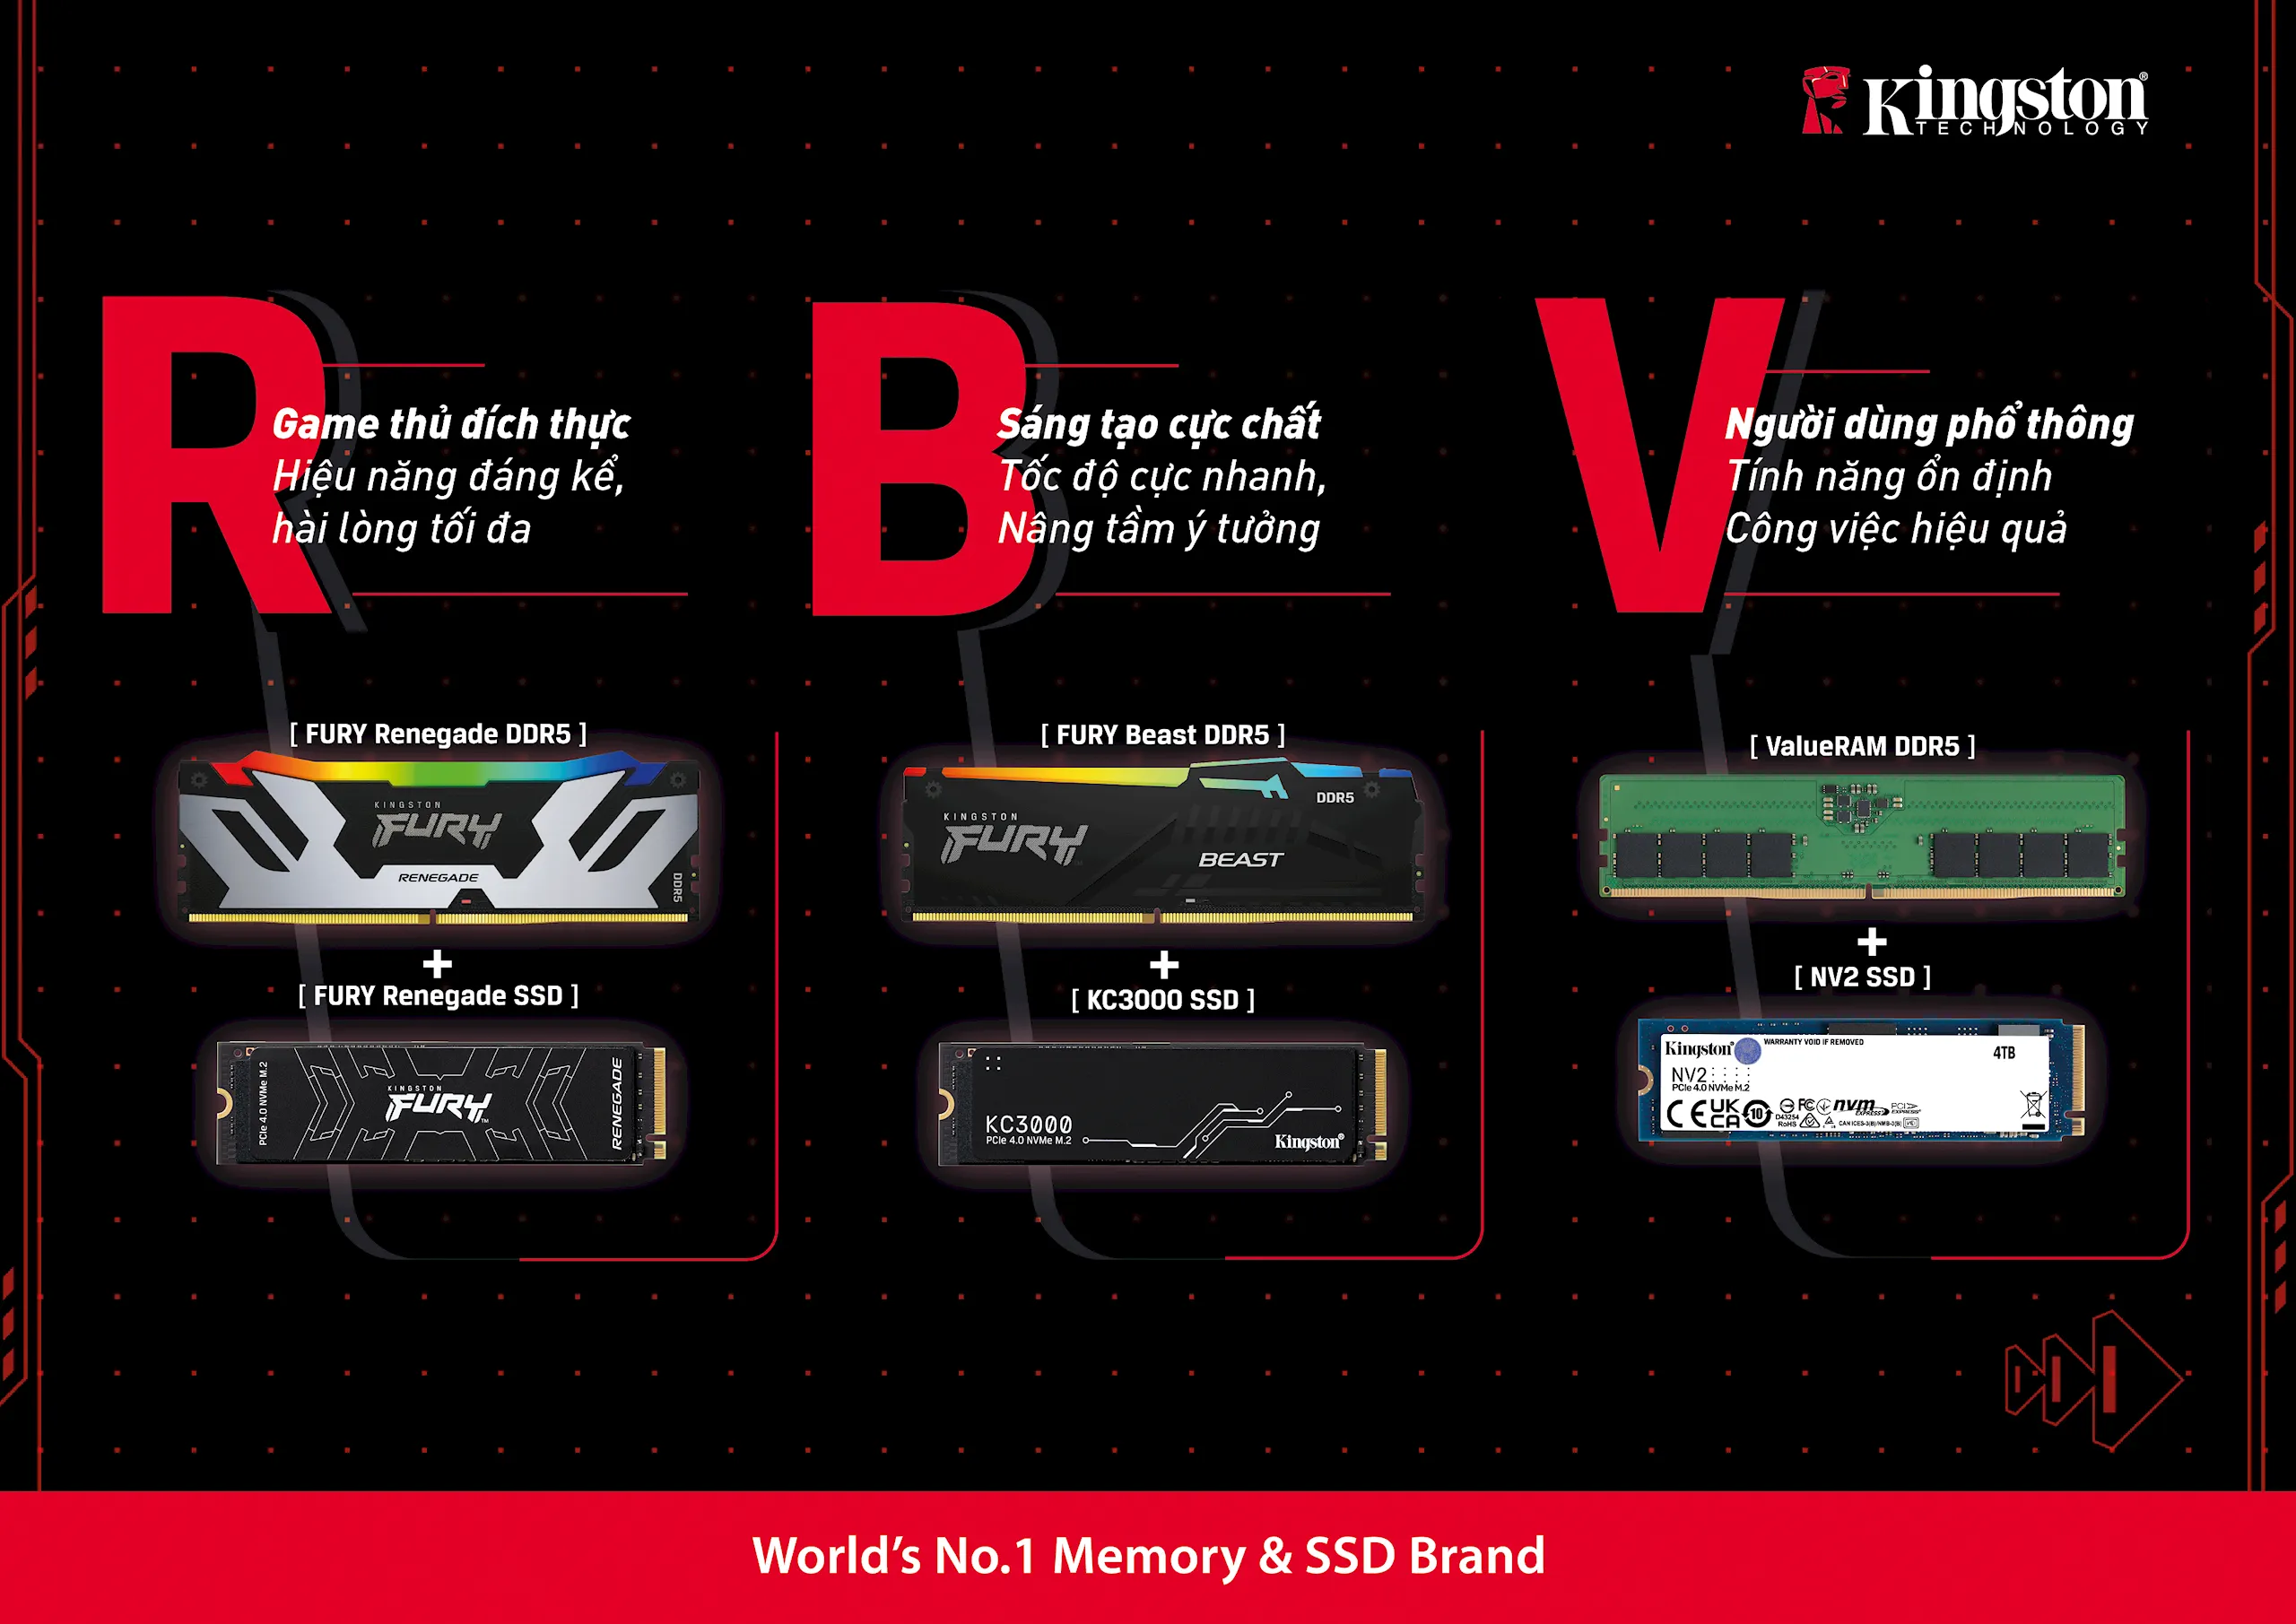 Kingston ra mắt giải pháp RBV - bộ đôi RAM và SSD tối ưu cho game thủ và người sáng tạo nội dung